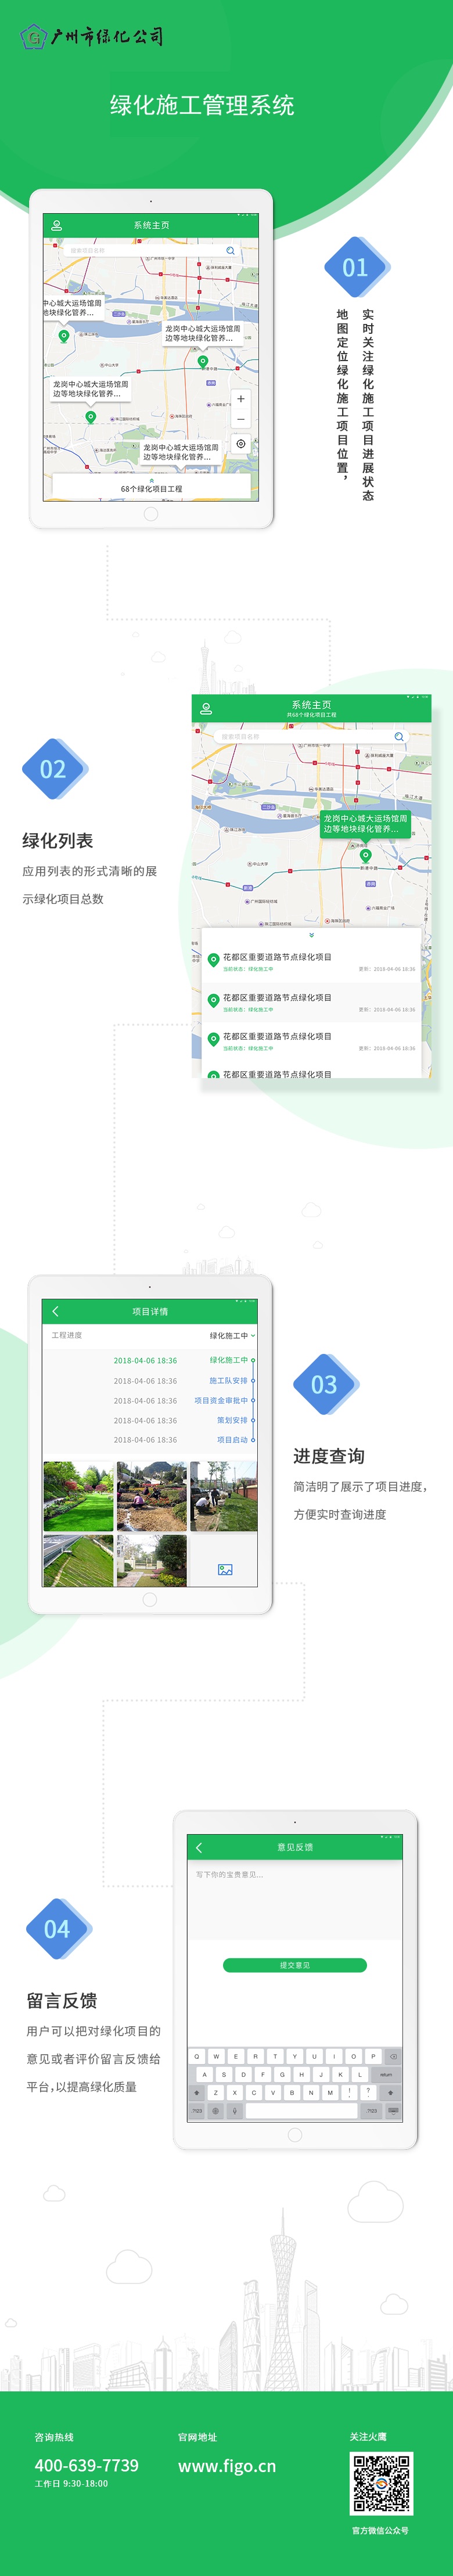 廣州綠化公司-綠化施工進度管理系統